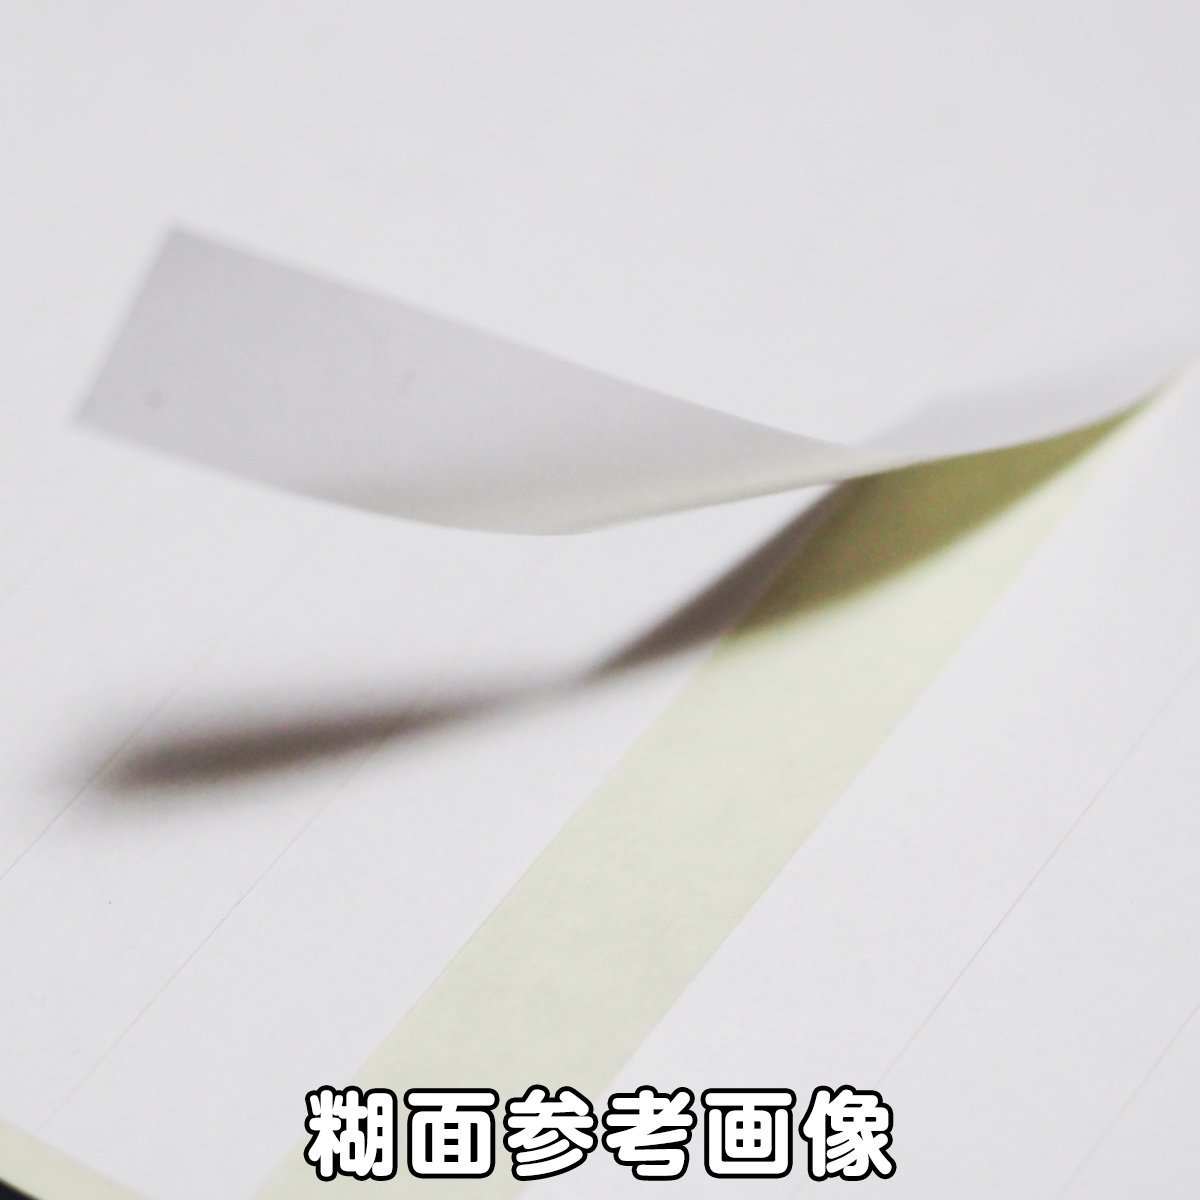 かたちシール 北海道 3.4cm×3cm 上質紙 15片 4シート 合計60片 定形郵便送料無料の画像4